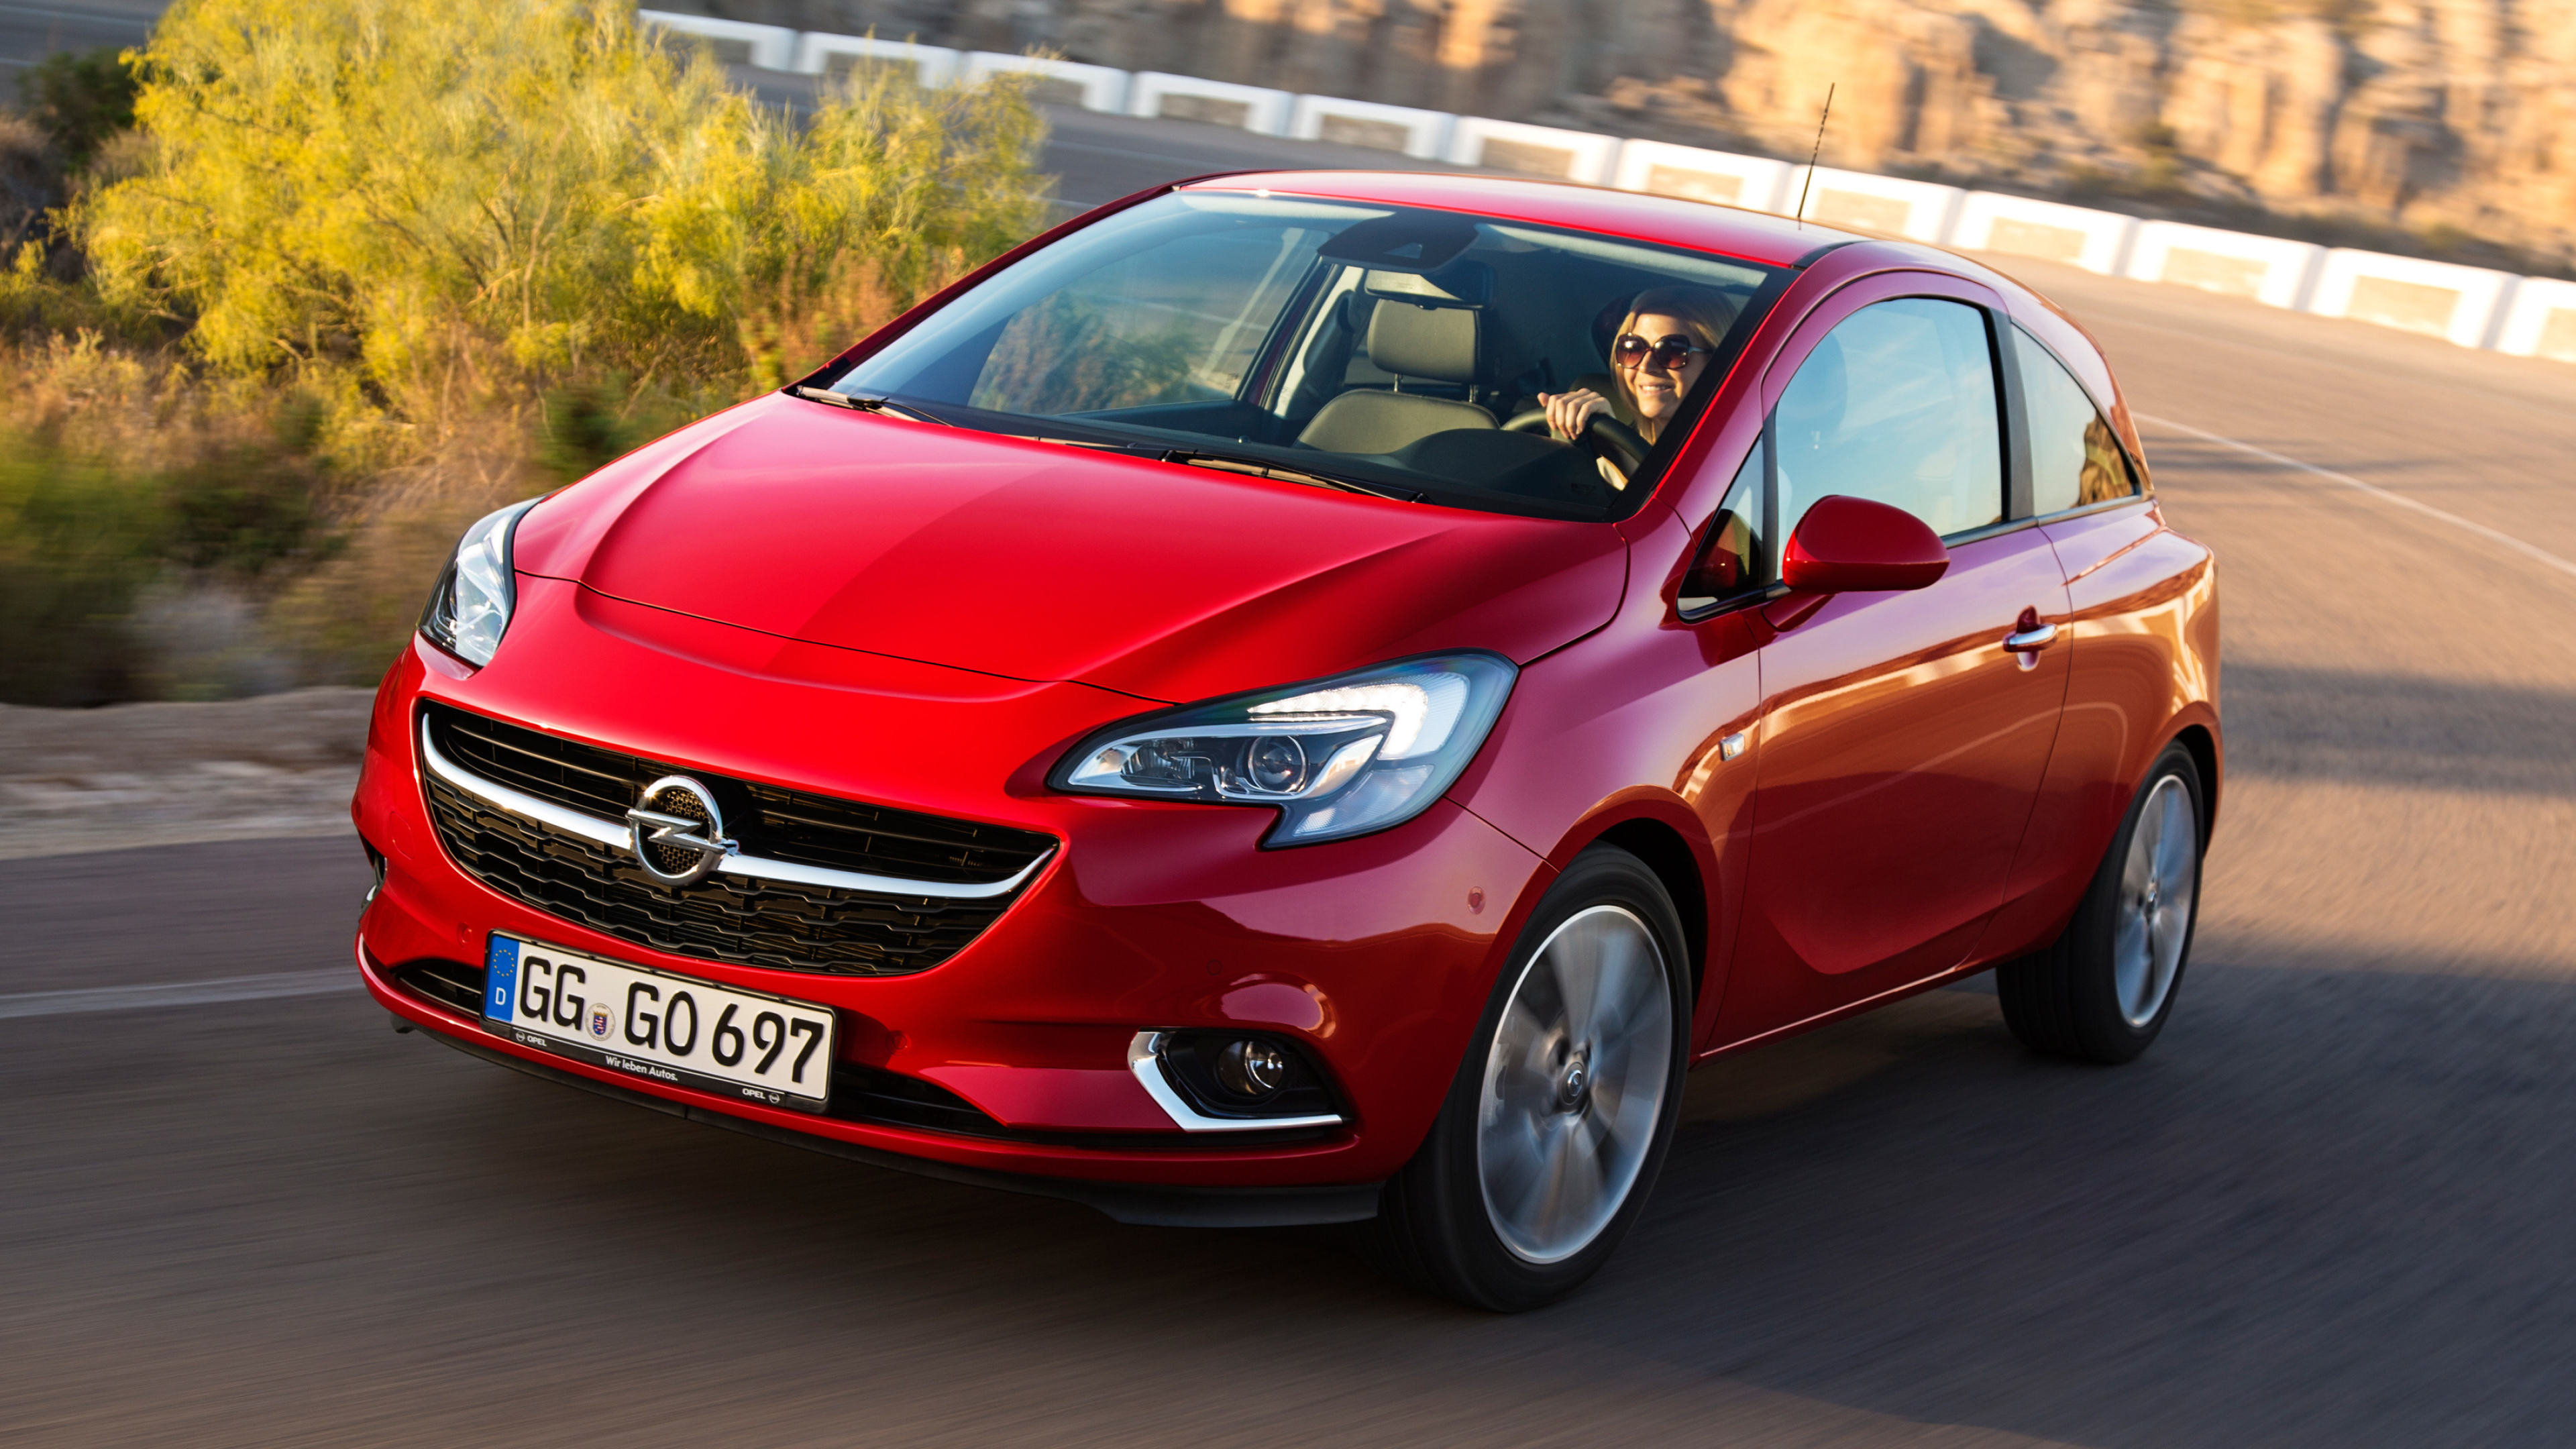 Opel Corsa, Auto expert, Corsa 3-door model, Compact hatchback, 3840x2160 4K Desktop